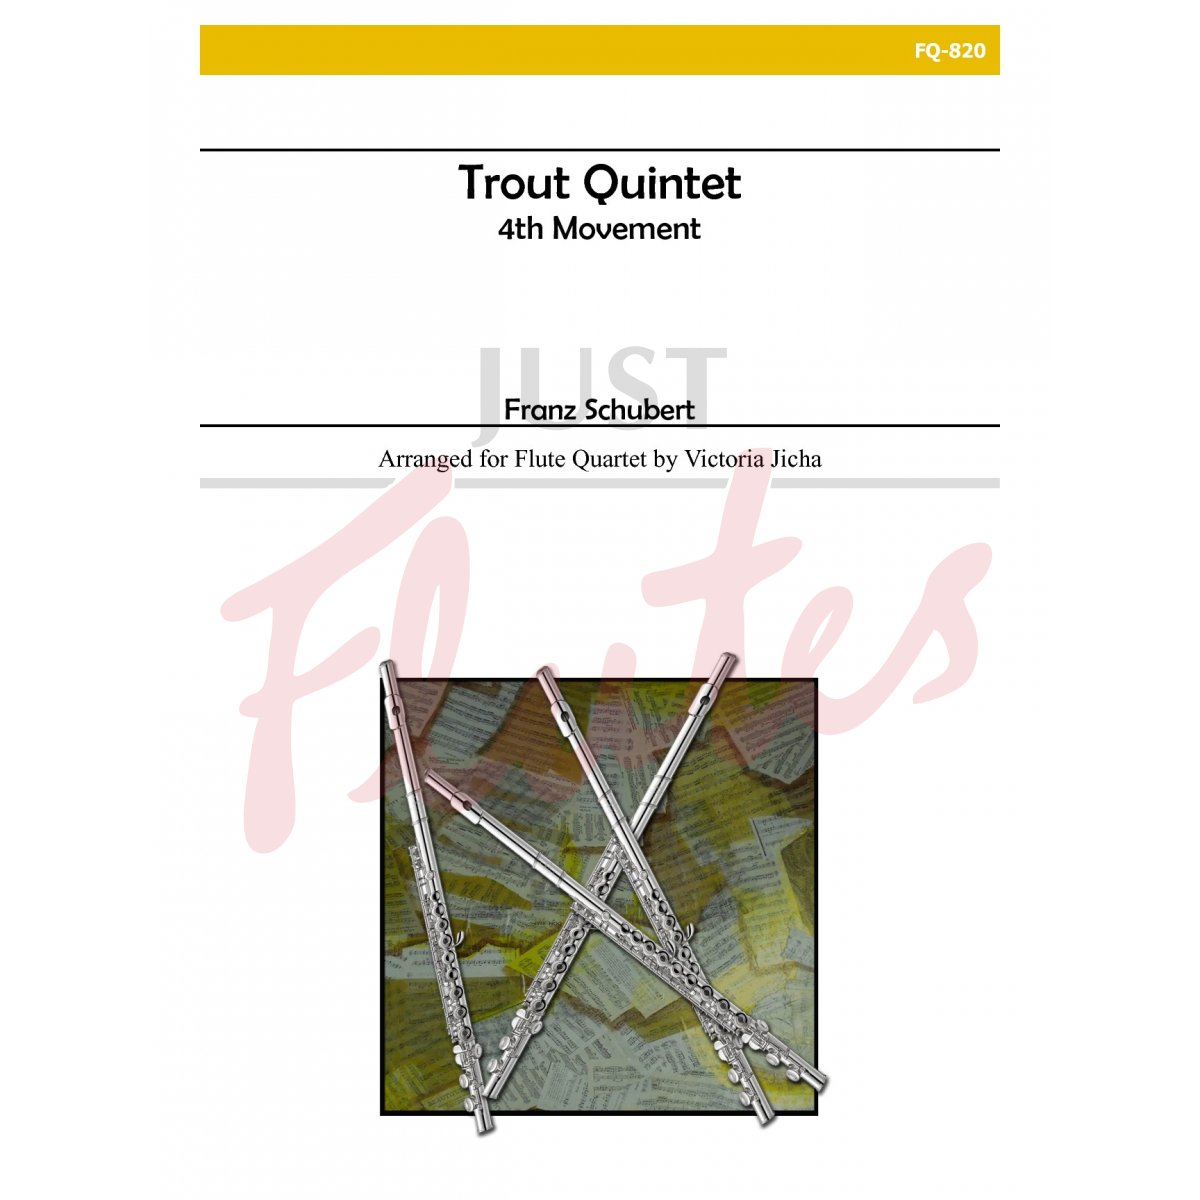 The Trout Quintet, 4th Movement for Four Flutes